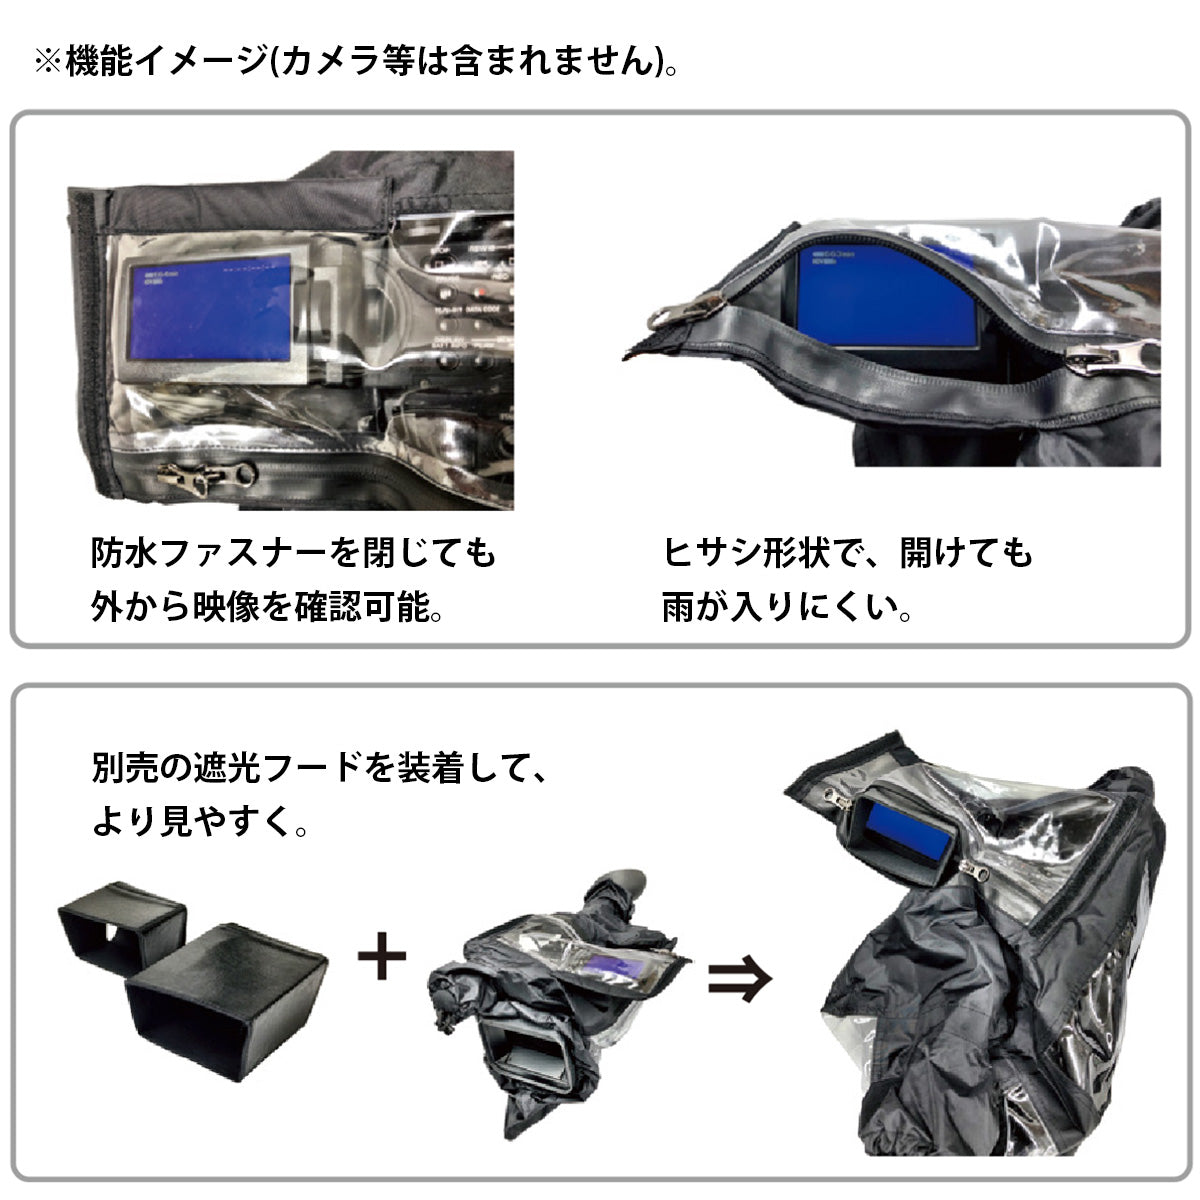 NEP(エヌ・イー・ピー) カメラ用レインカバー RC-HANDHELD-LCD2